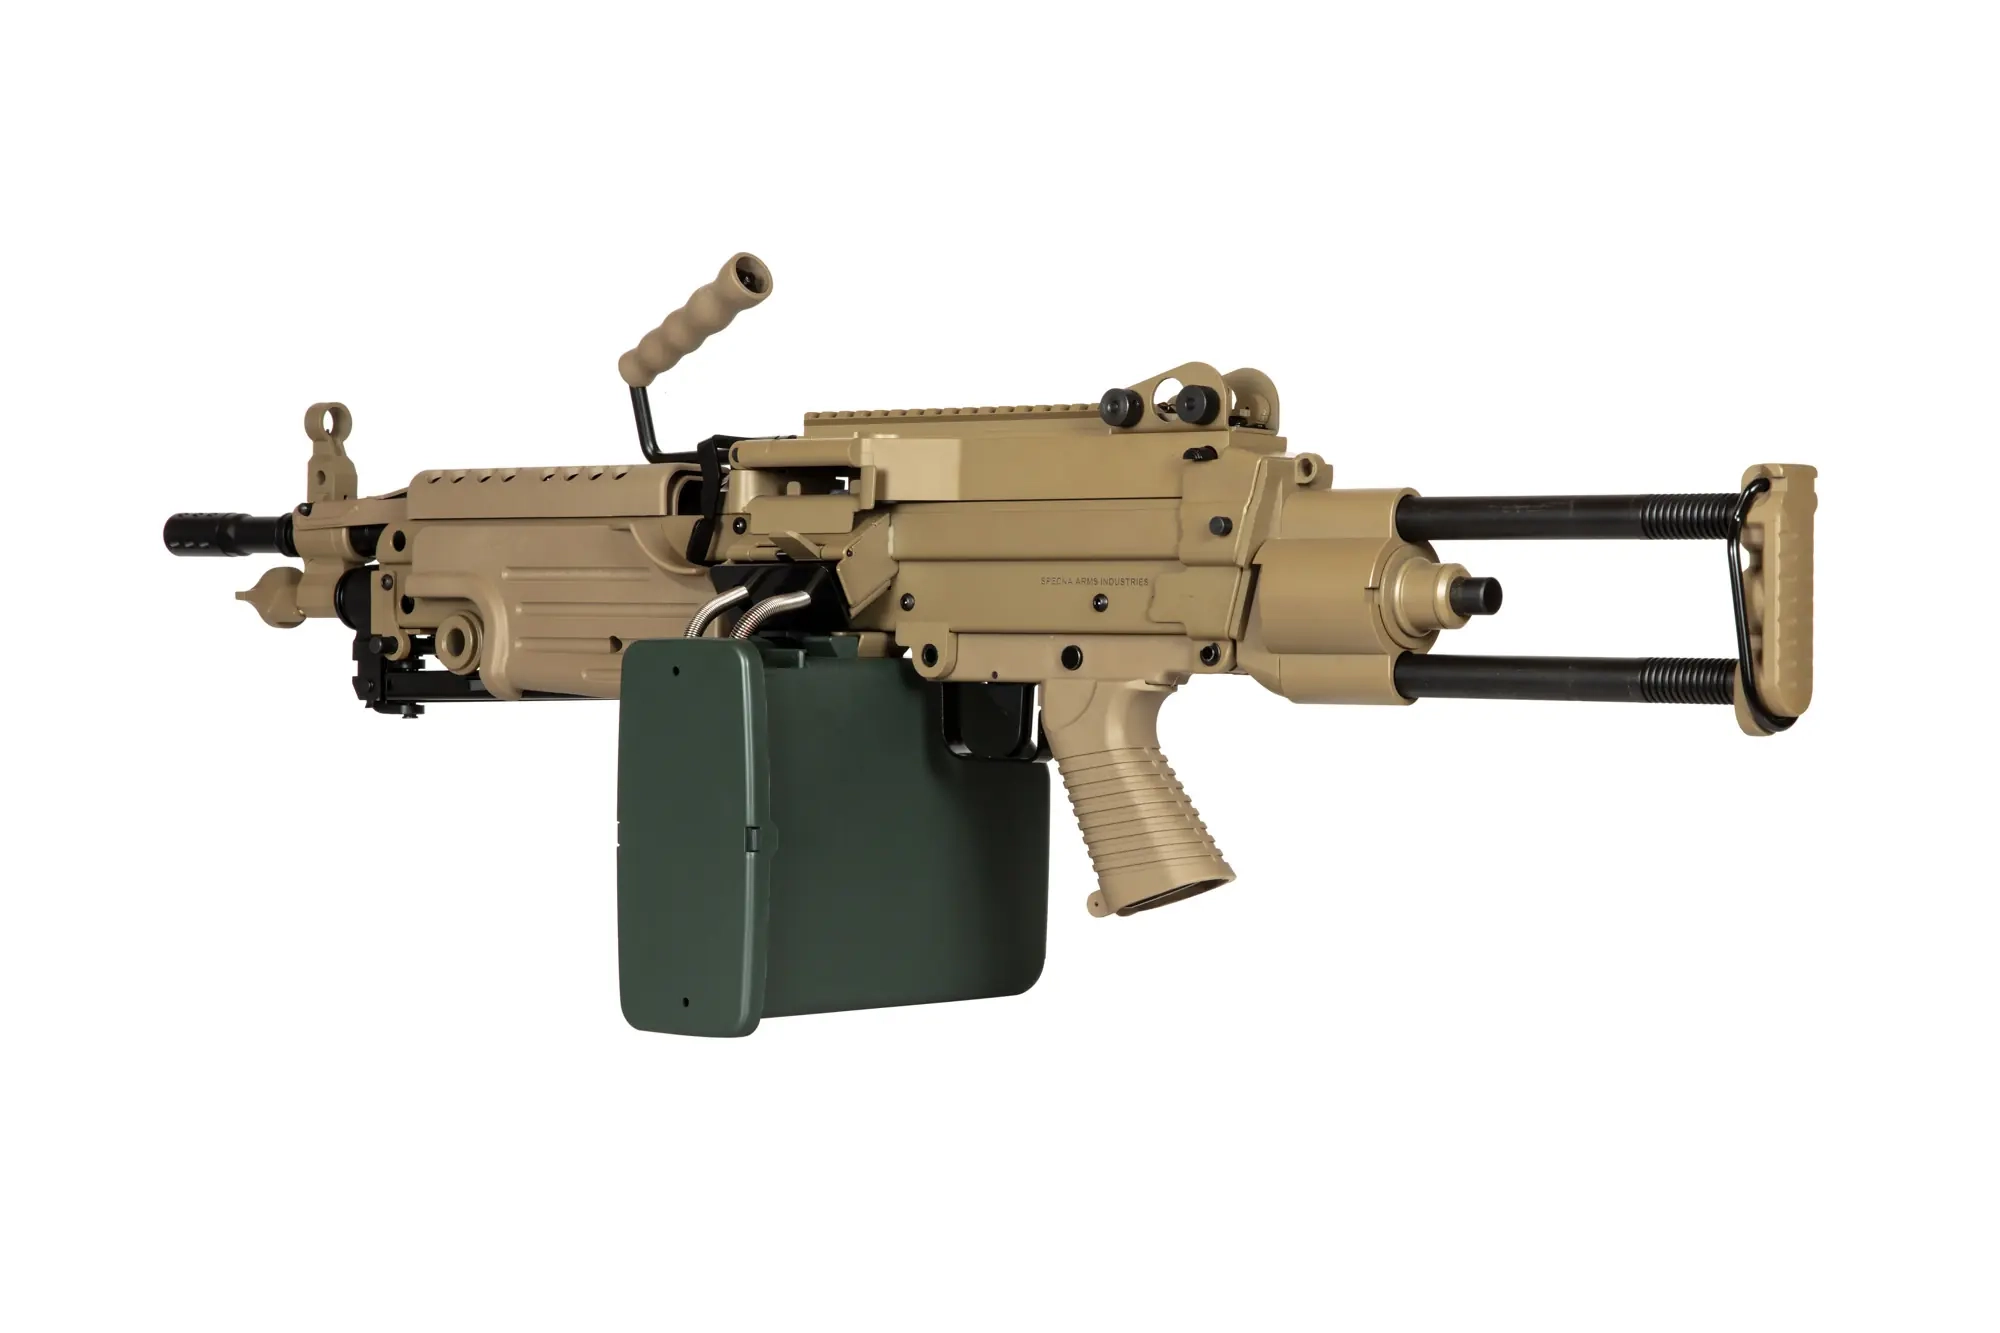 Specna Arms SA-249 PARA EDGE AEG konekivääri - hiekka